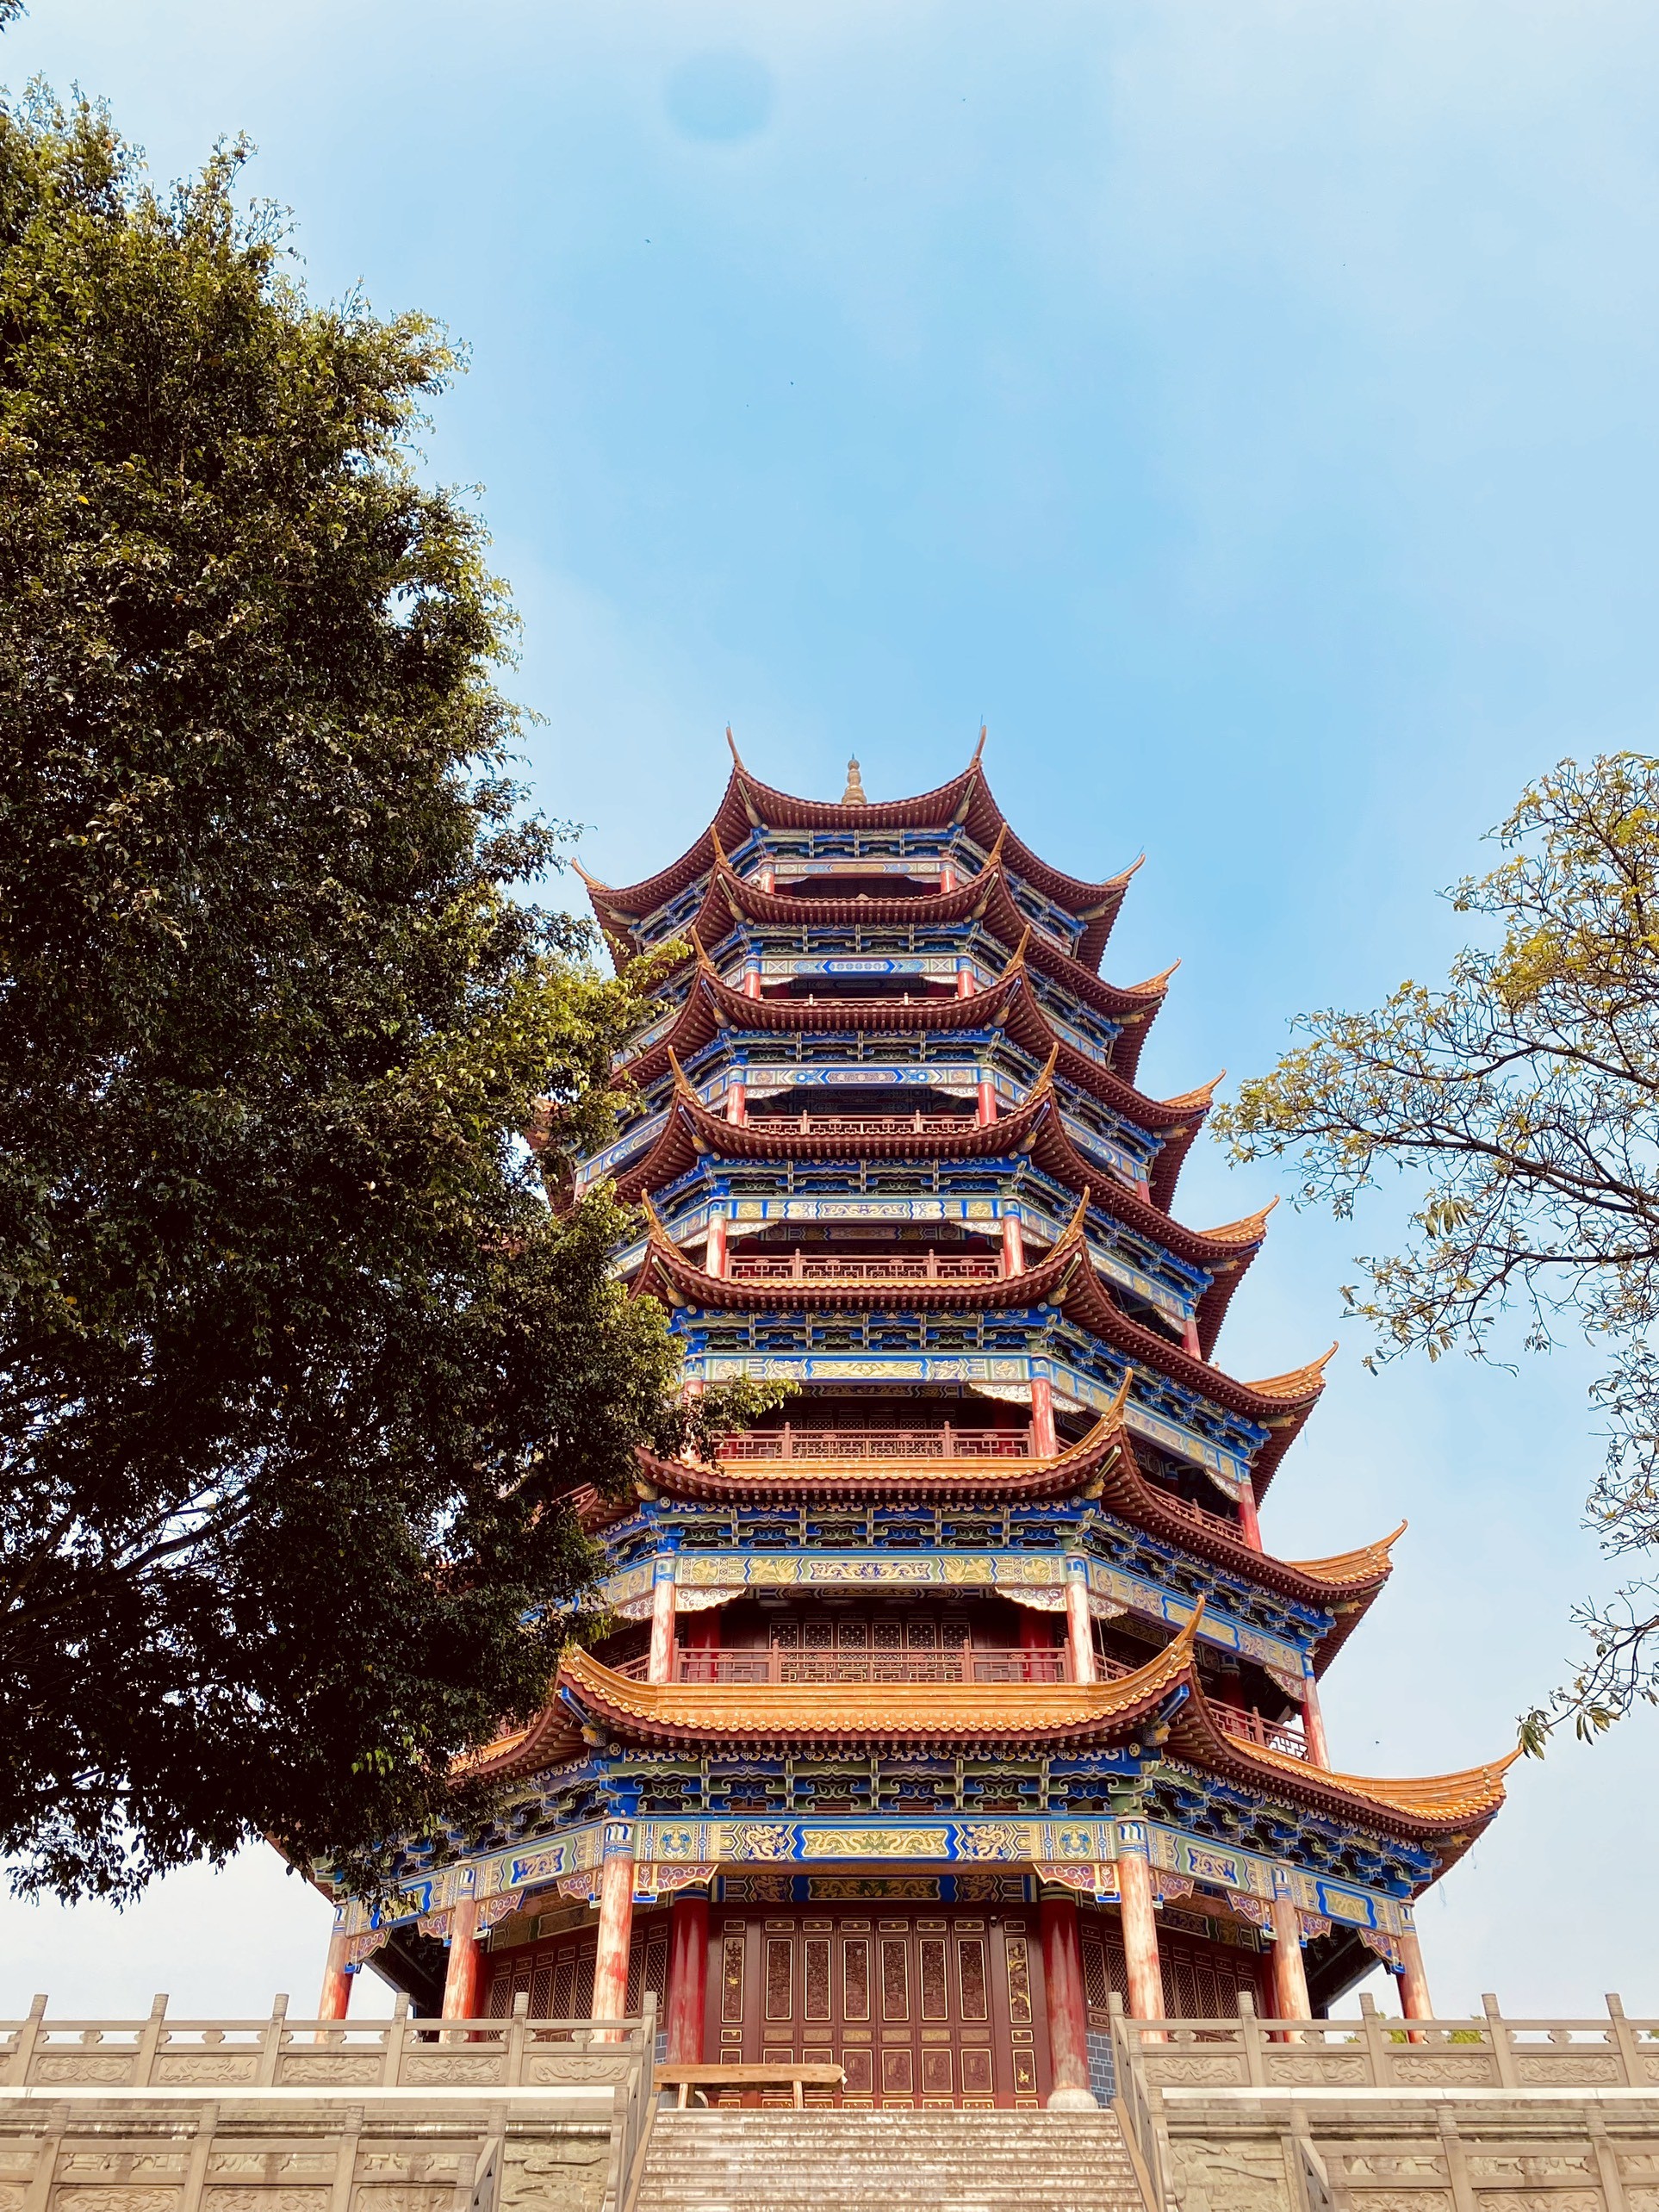 Chiêm ngưỡng vẻ đẹp kiến trúc của thành cổ Trung Quốc ảnh 11